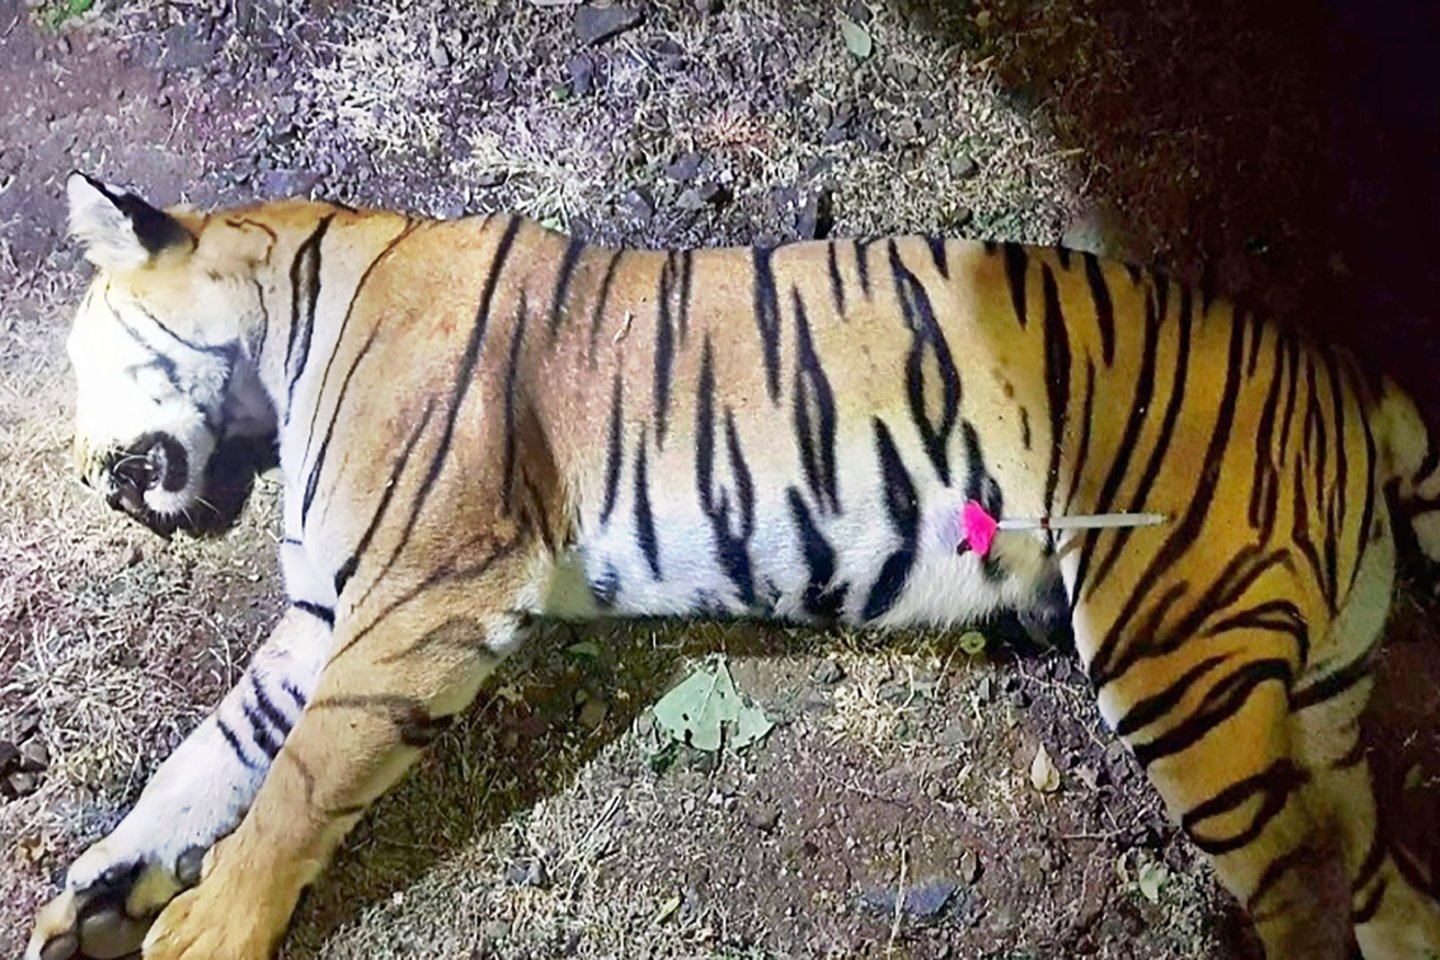  Indijoje po ilgai trukusių paieškų nušauta tigrė žmogėdra, per dvejus metus nužudžiusi daugiau nei 10 žmonių, tačiau kilo abejonių, ar ji buvo nudobta teisėtai.<br>AFP/Scanpix nuotr. 